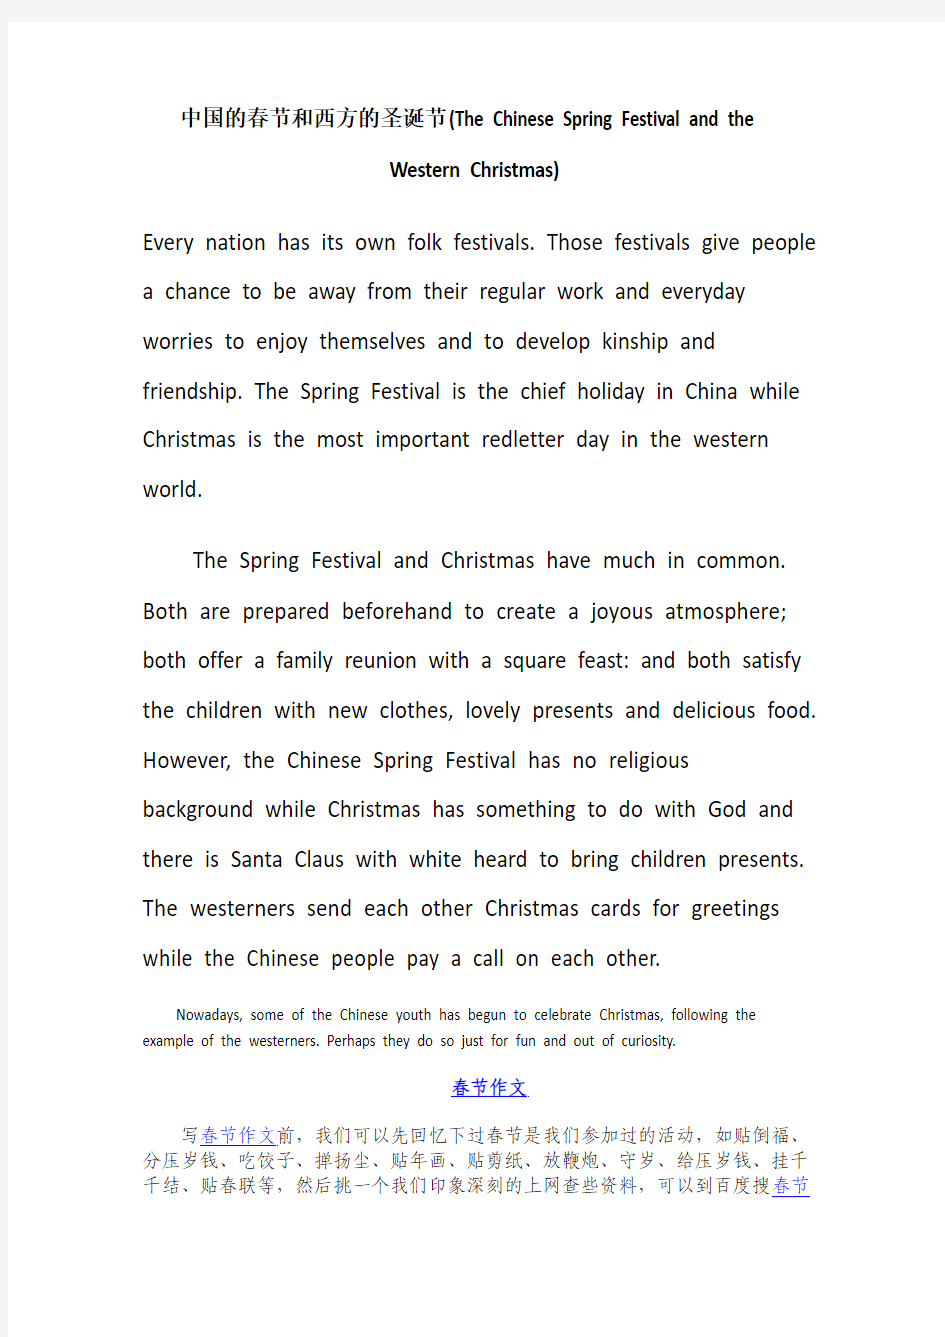 英语作文素材中国的春节和西方的圣诞节